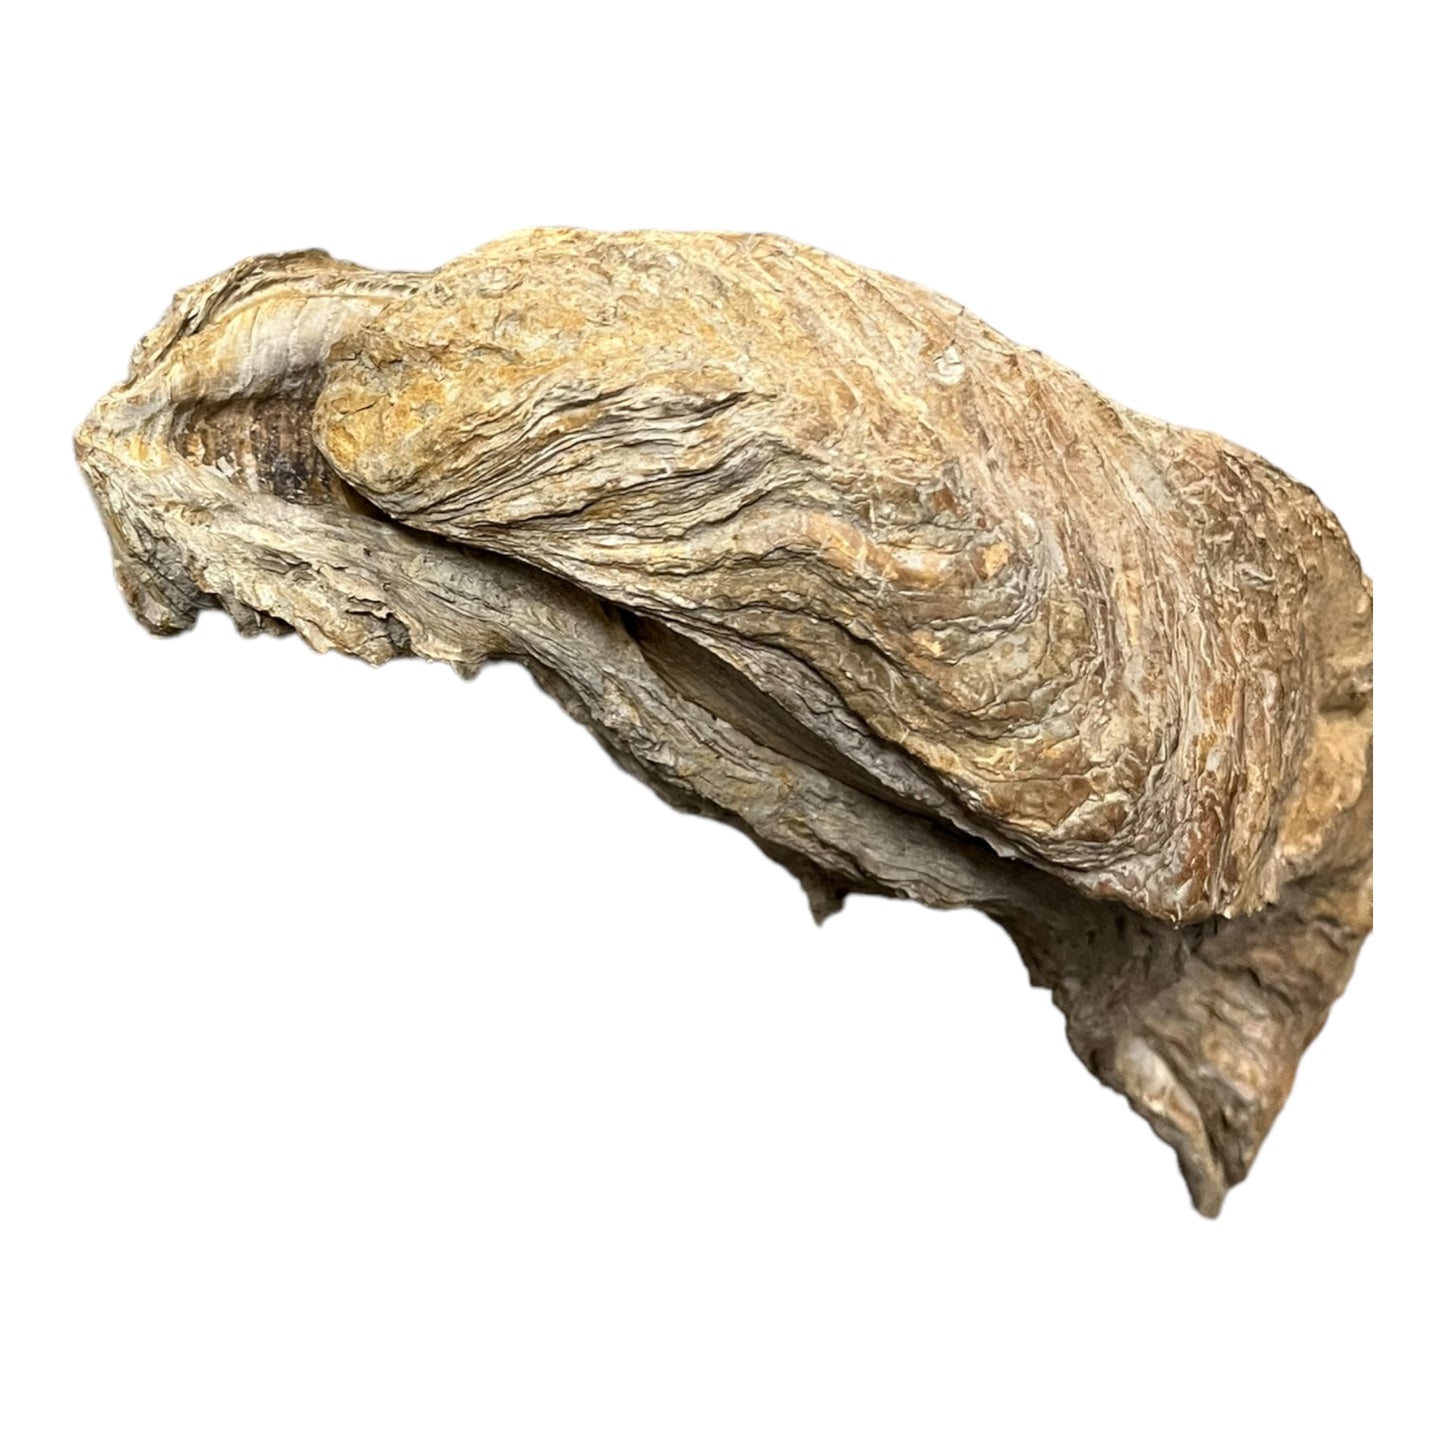 Ostrea crassissima grande Huitre fossile Hérault France DR193